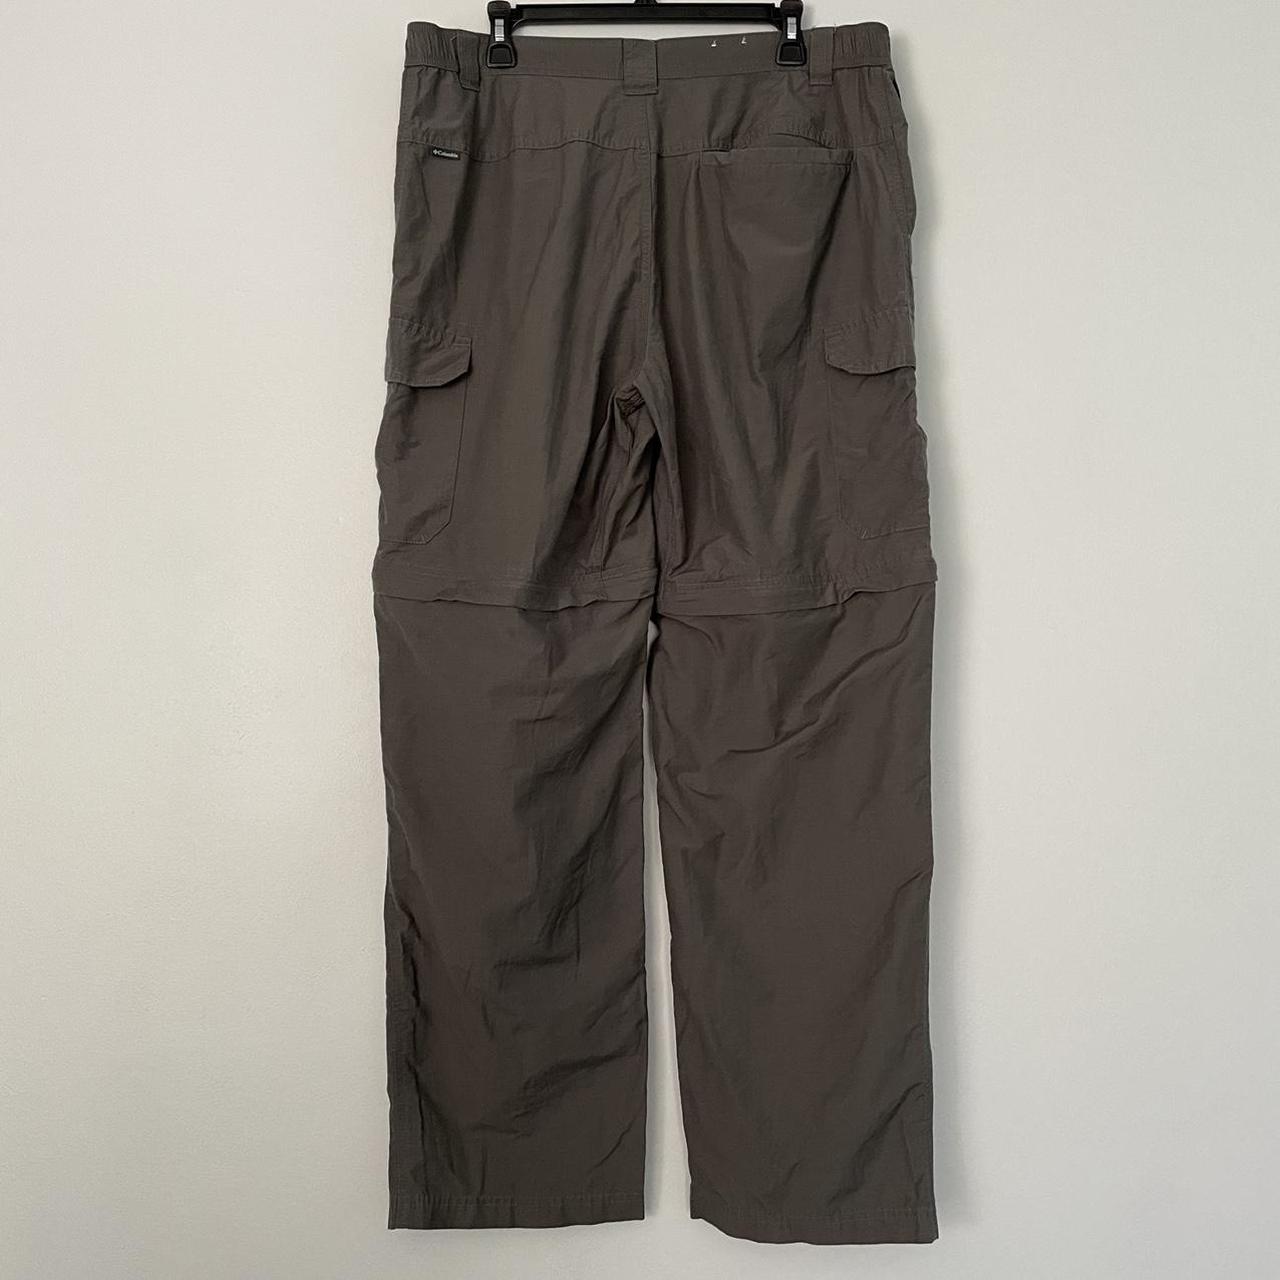 Product Image 2 - Columbia Mens Convertible Pants Shorts